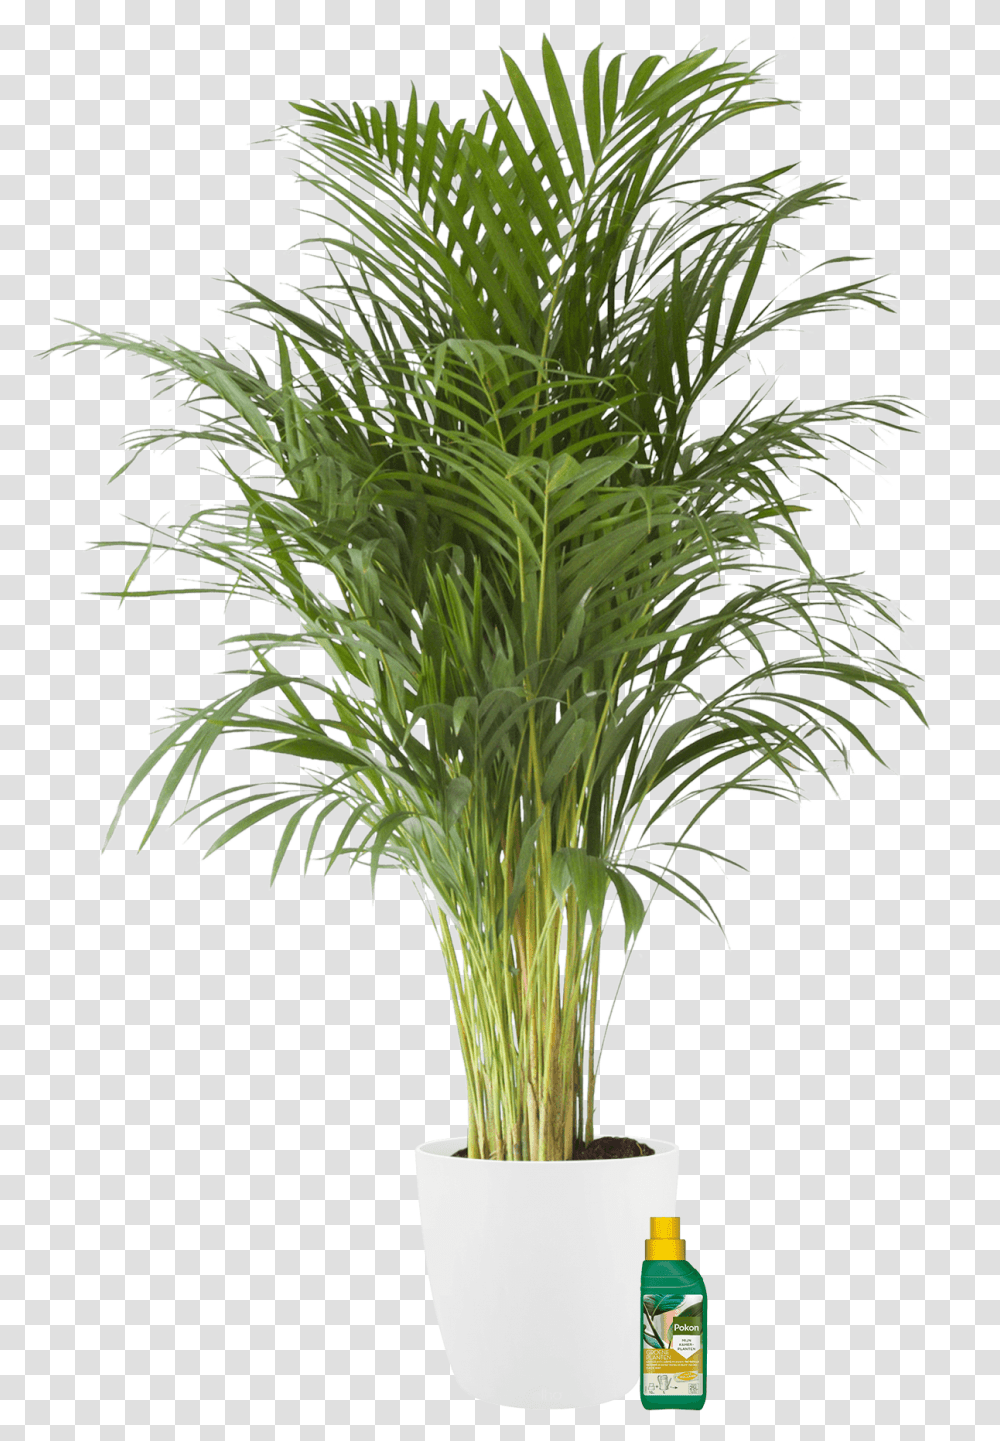 Palmier D Arec, Plant, Tree, Palm Tree, Arecaceae Transparent Png